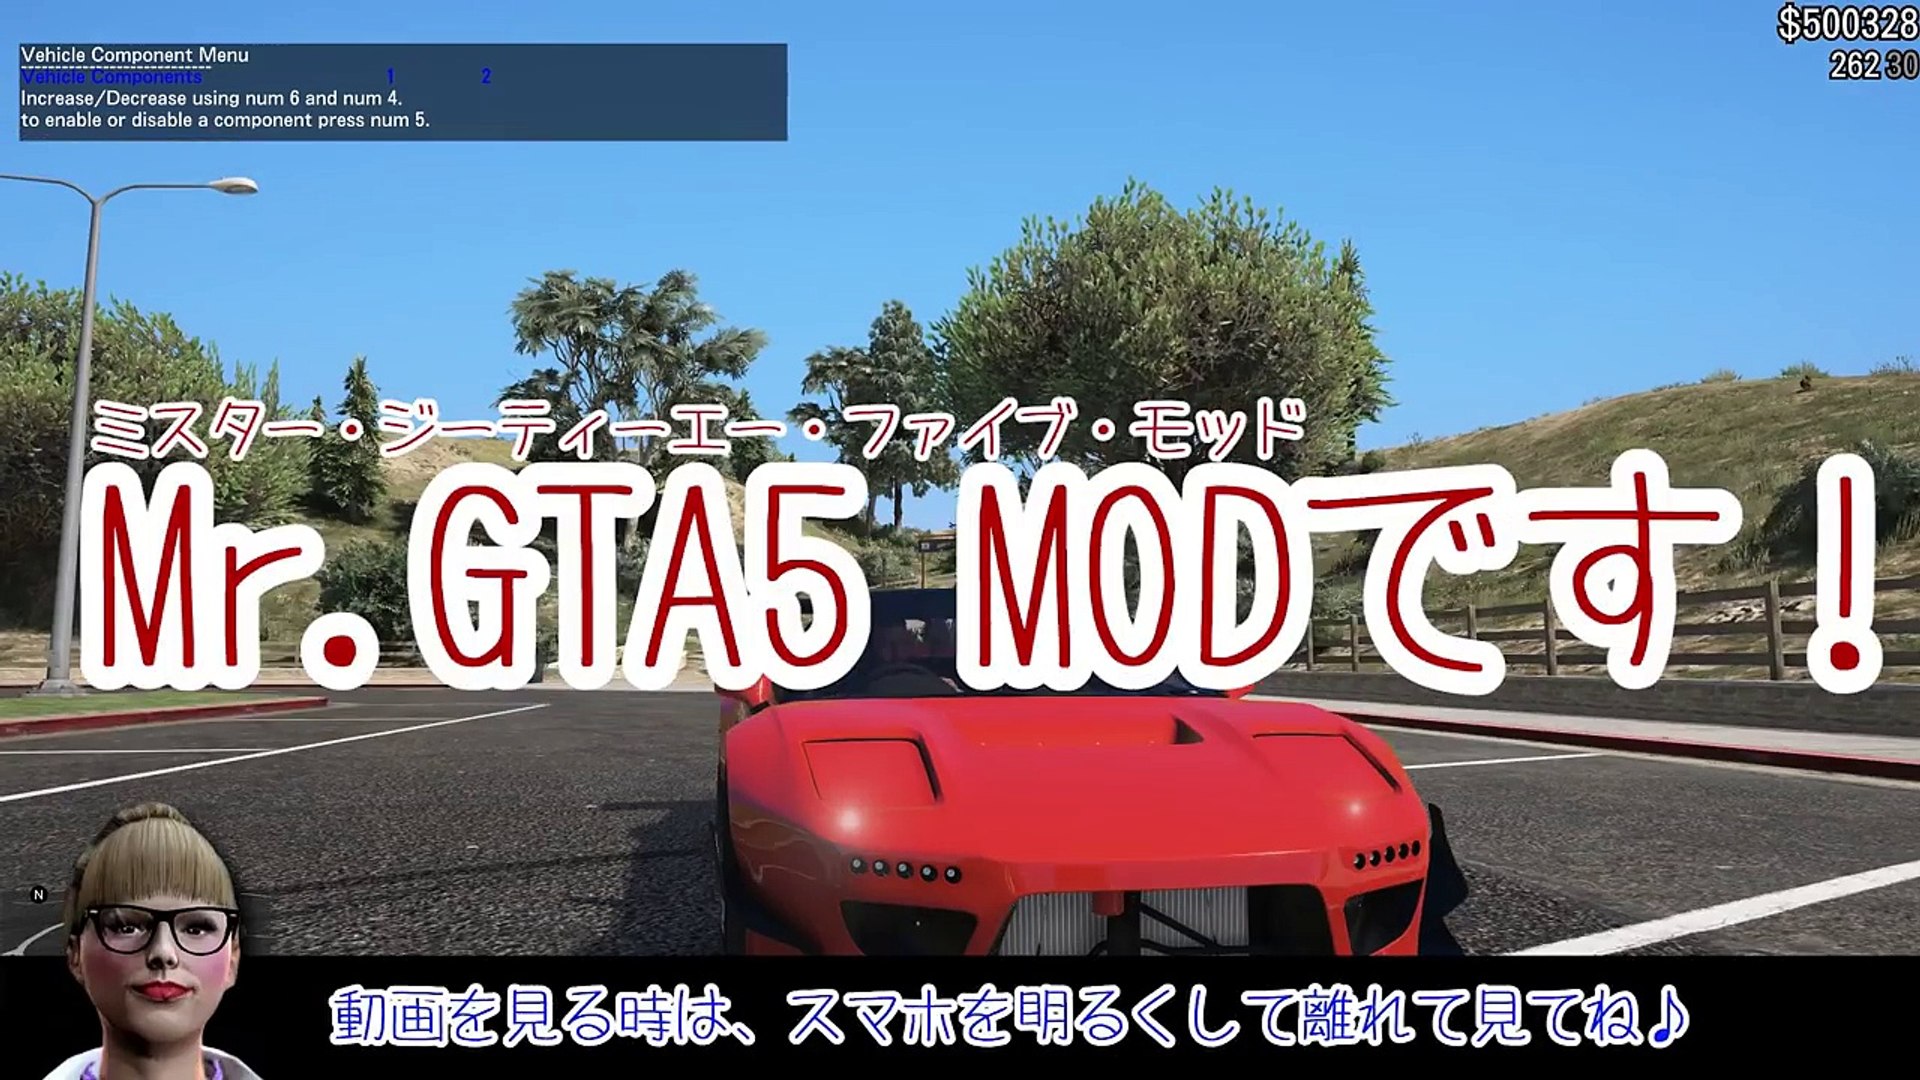 Gta5 実車mod ホンダnsxで峠ドリフト Video Dailymotion